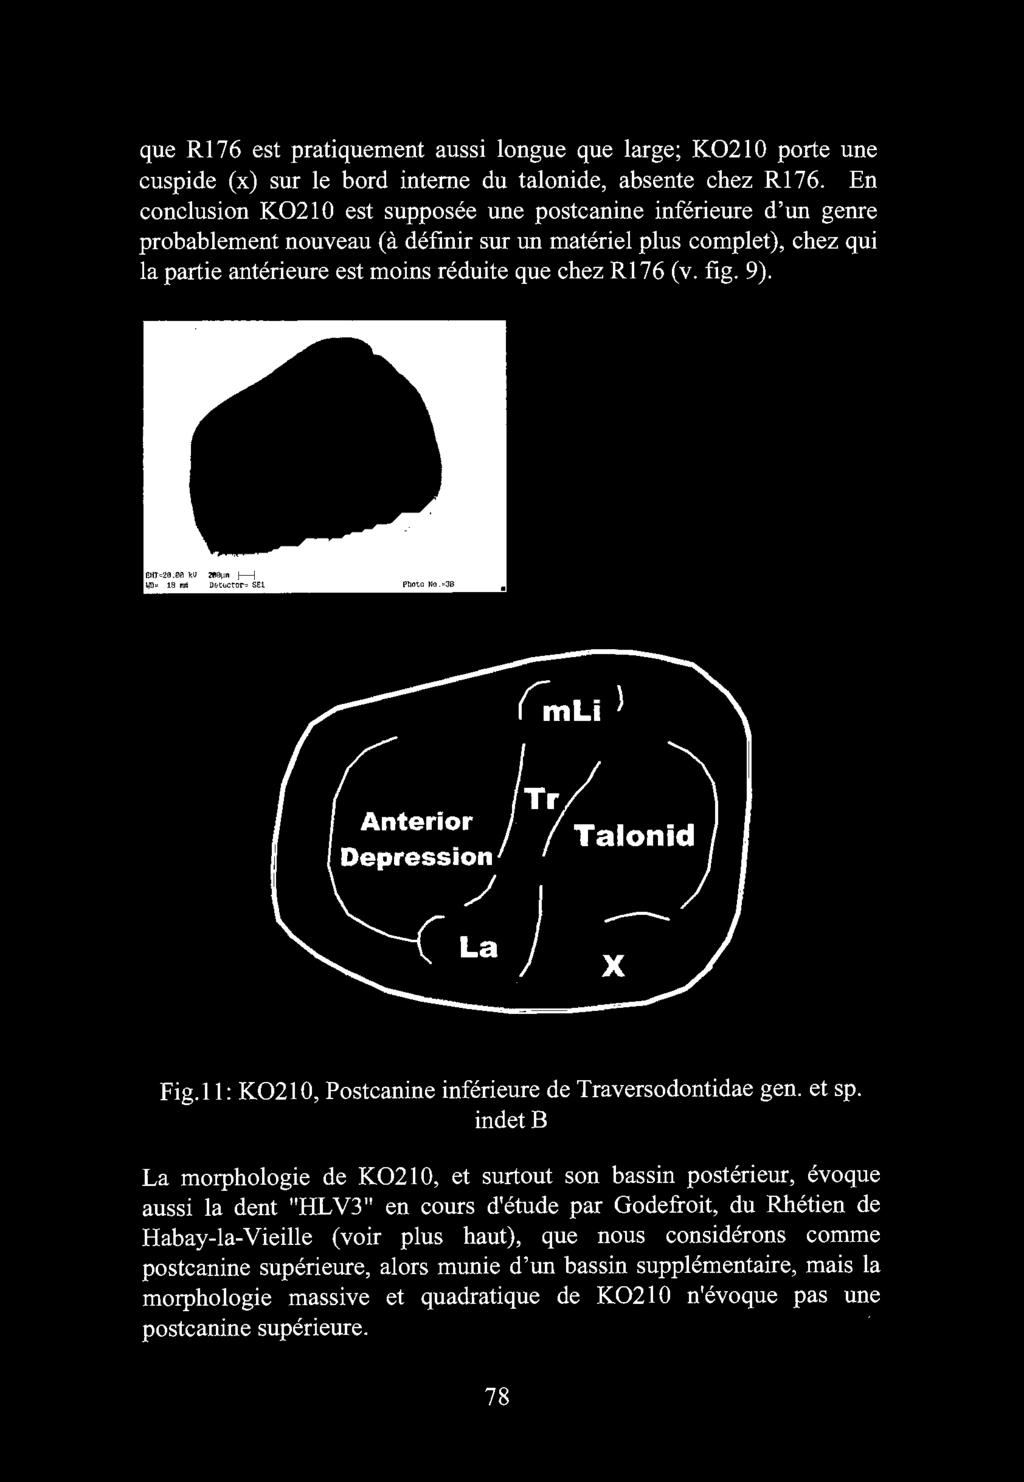 indet B La morphologie de K02 l 0, et surtout son bassin posterieur, evoque aussi la dent "HL V3" en cours d'etude par Godefroit, du